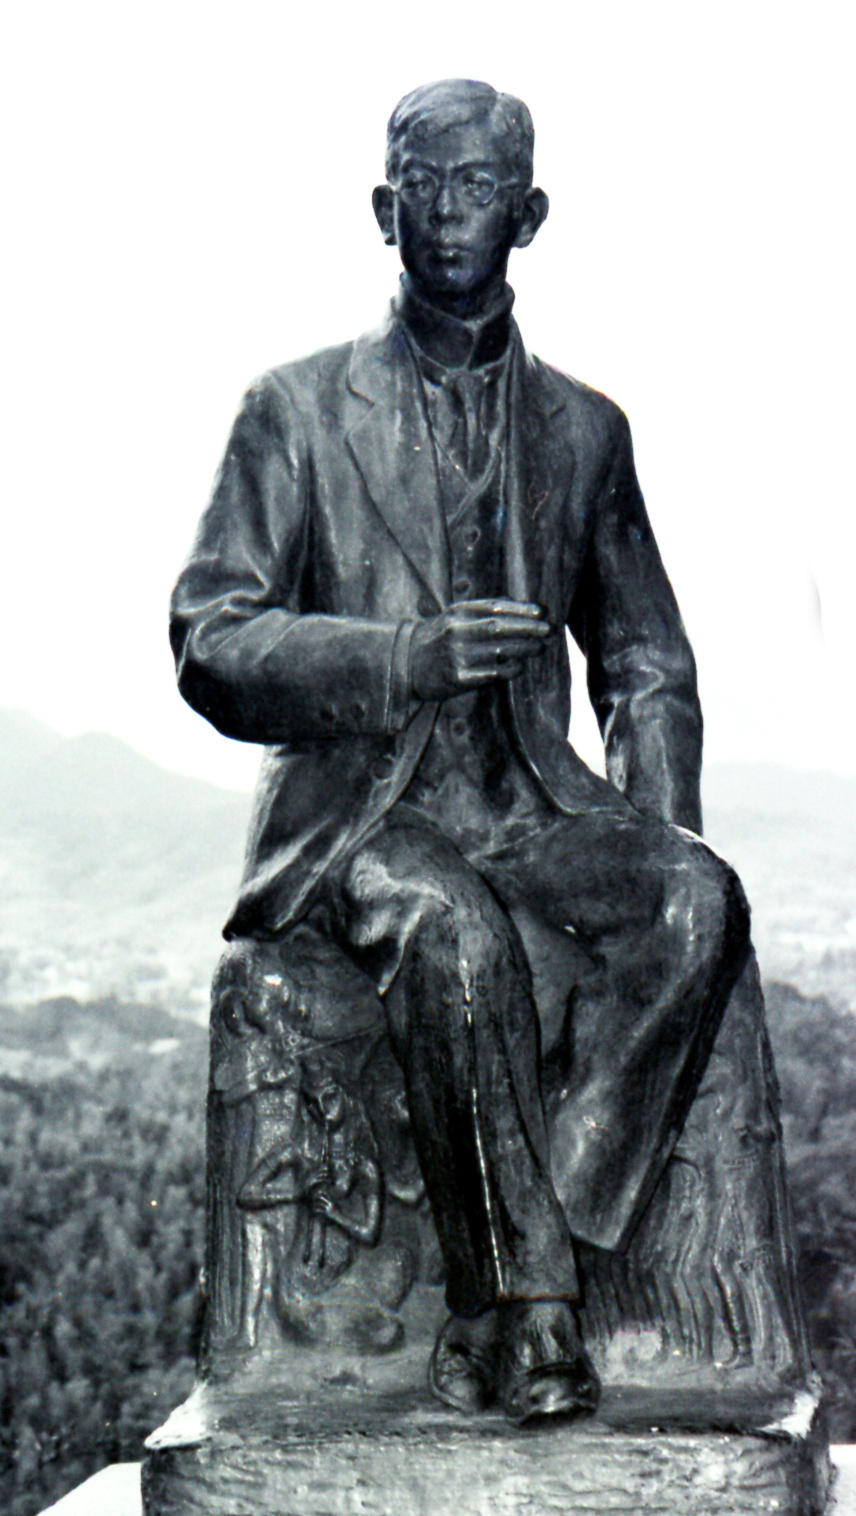 滝廉太郎銅像